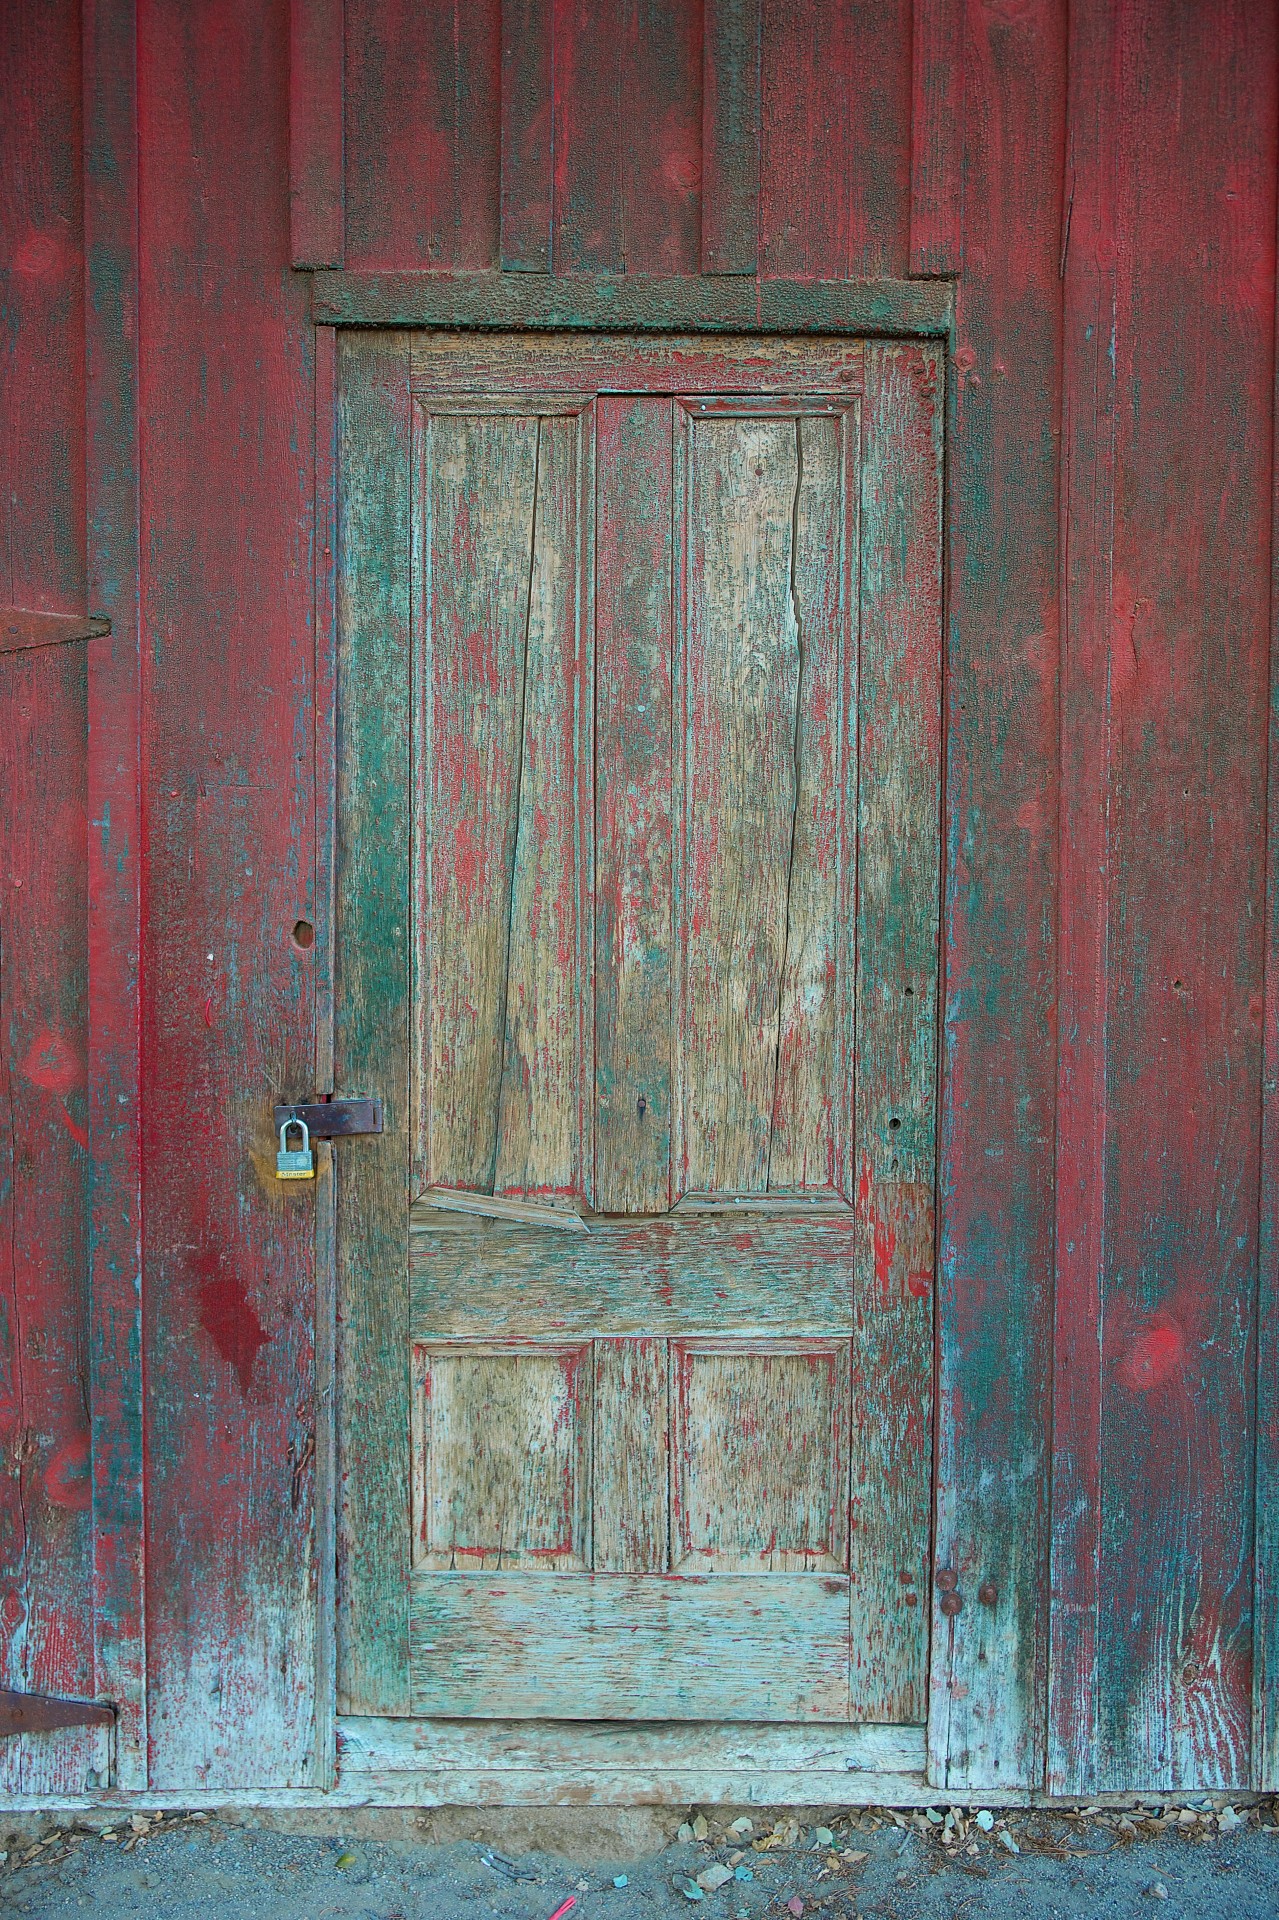 Rustic Red Wooden Door